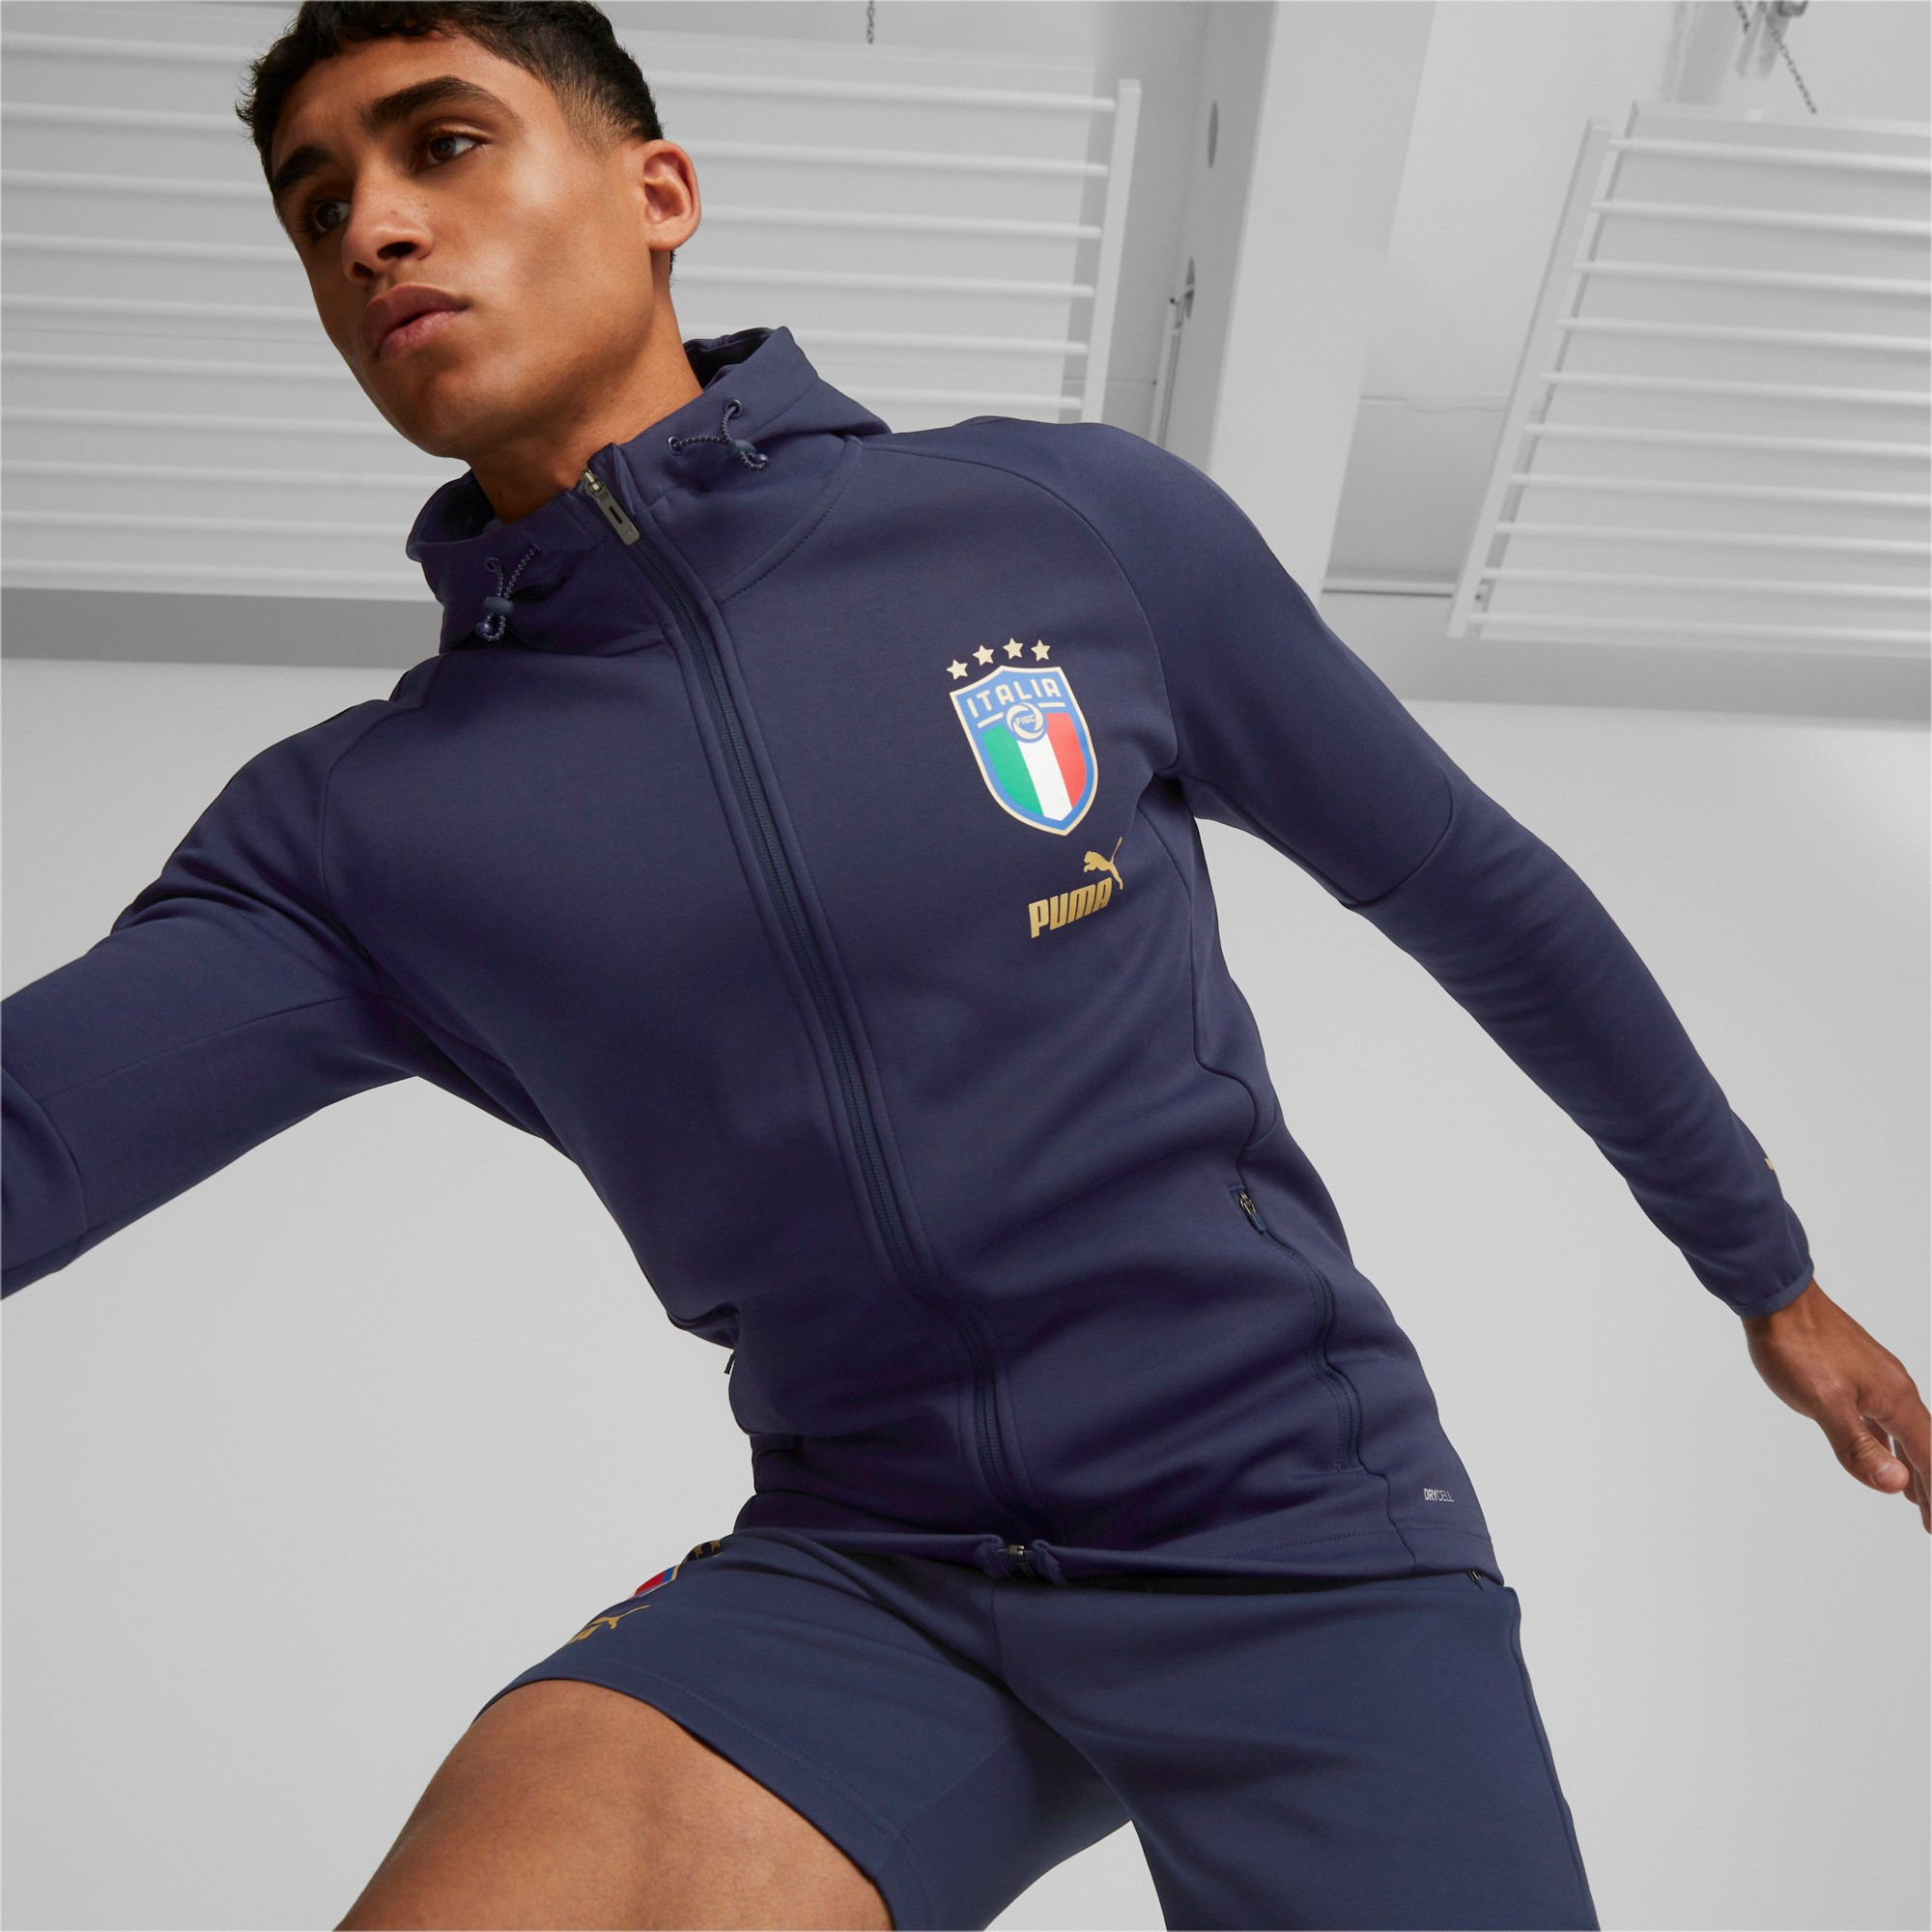 Veste à capuche de football pour homme Puma Italie Coach Casuals - Peacoat/Puma Team Gold